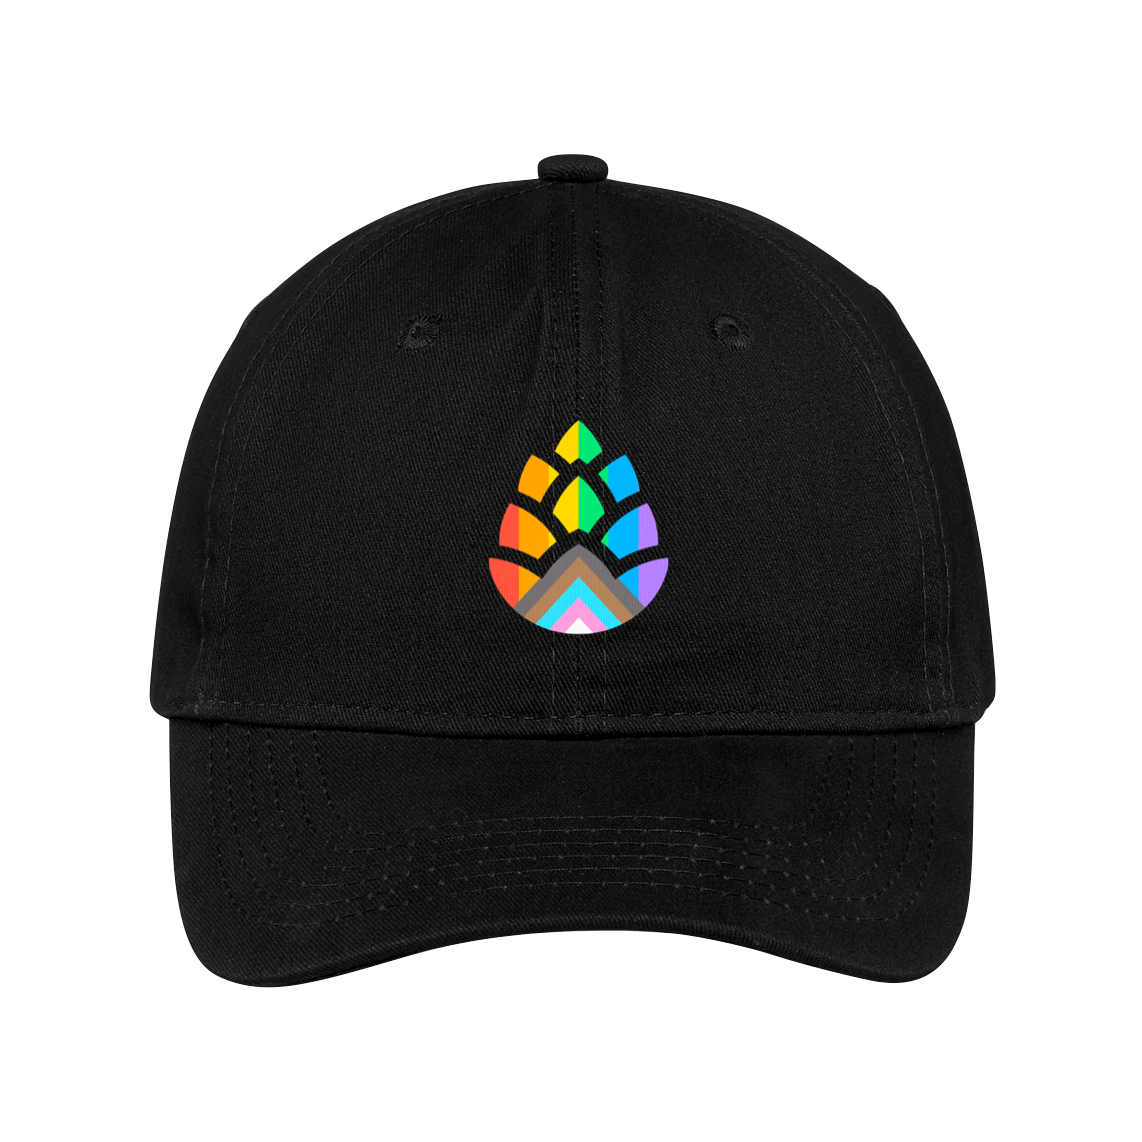 Pridecone Hat